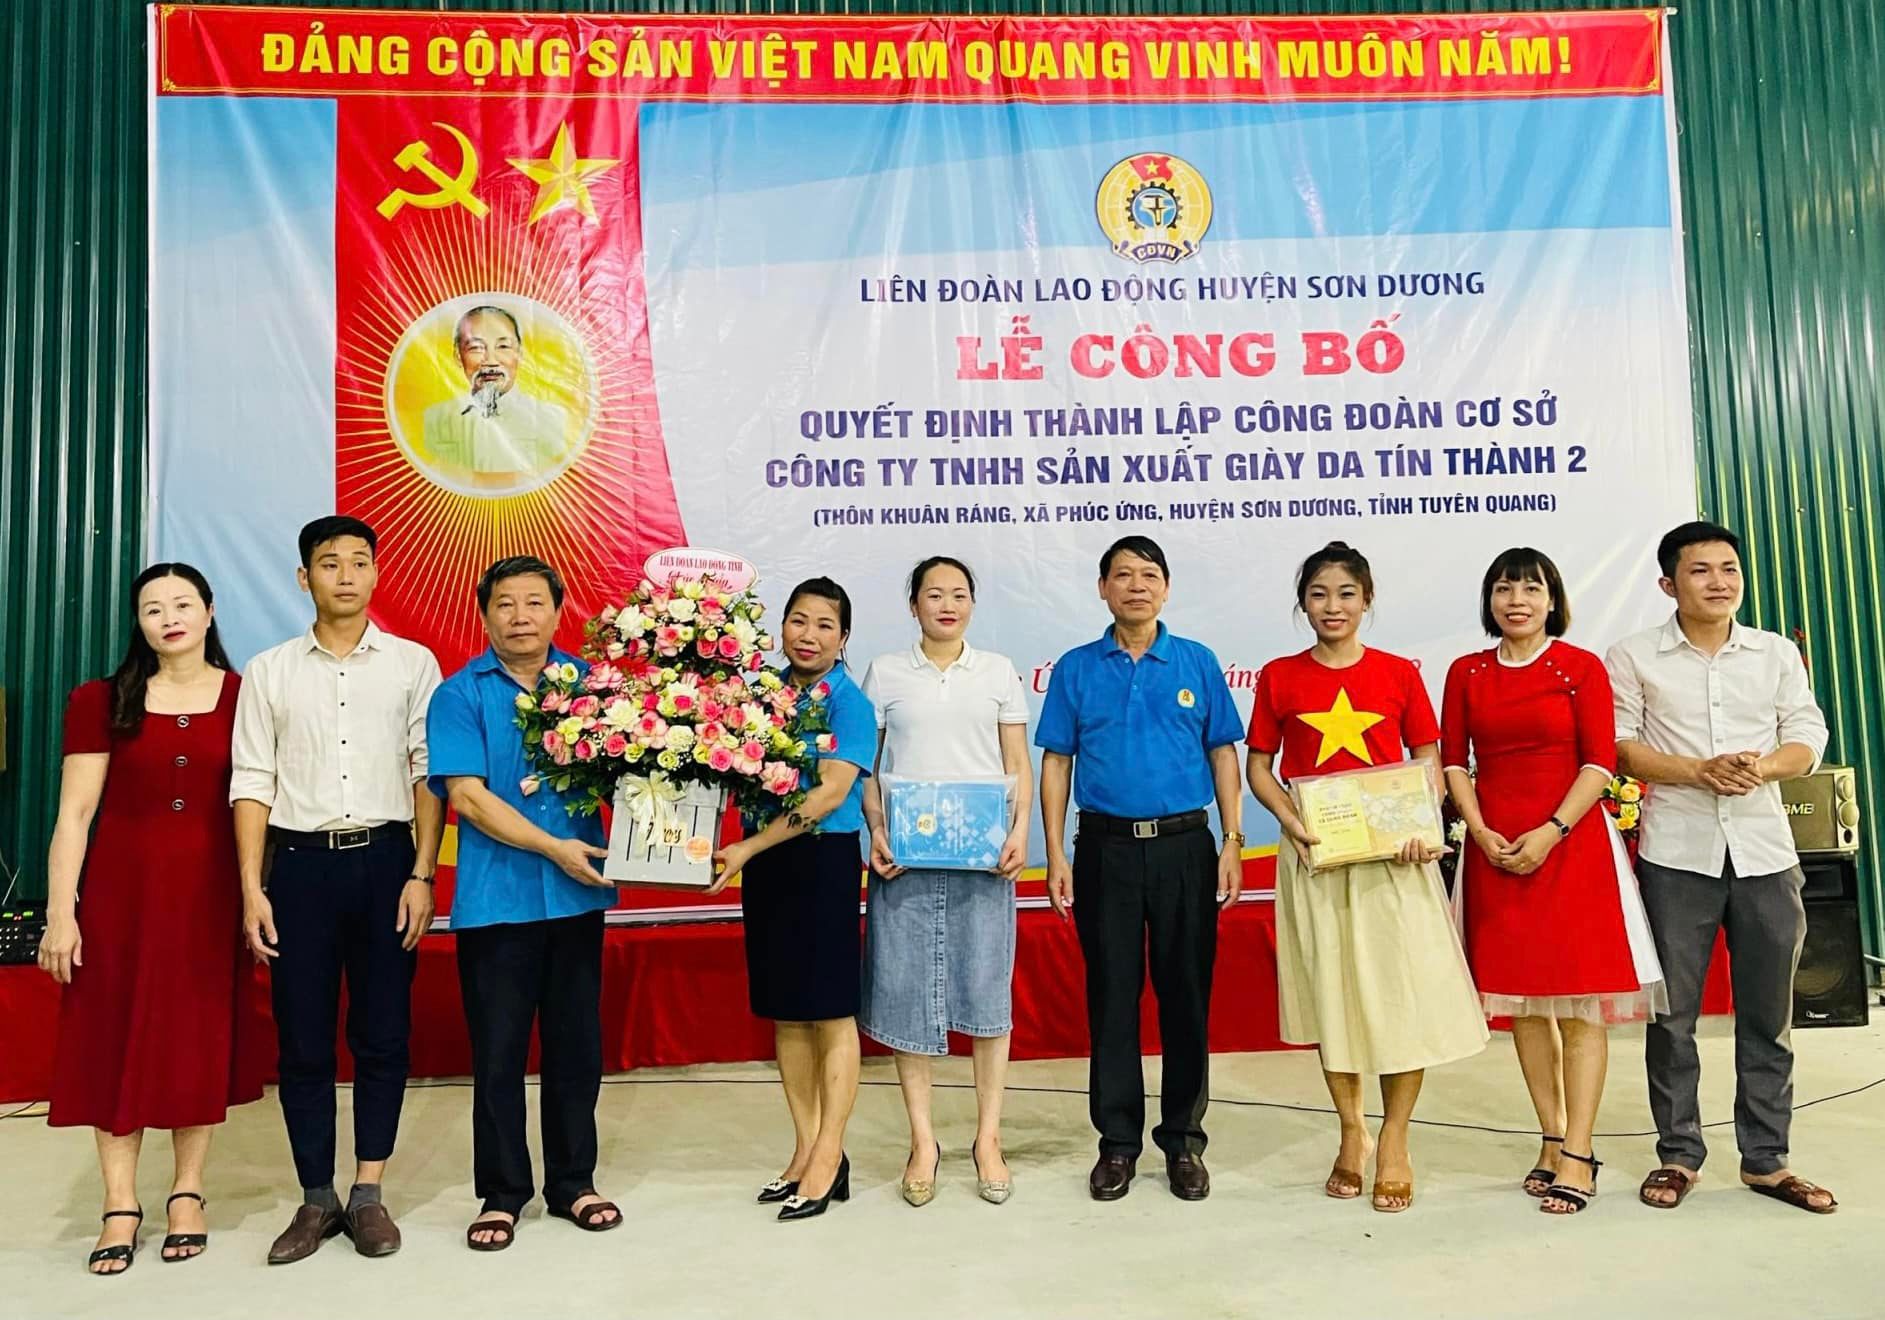 Liên đoàn Lao động huyện Sơn Dương công bố Quyết định thành lập Công đoàn cơ sở Công ty TNHH Sản xuất Giày da Tín Thành 2